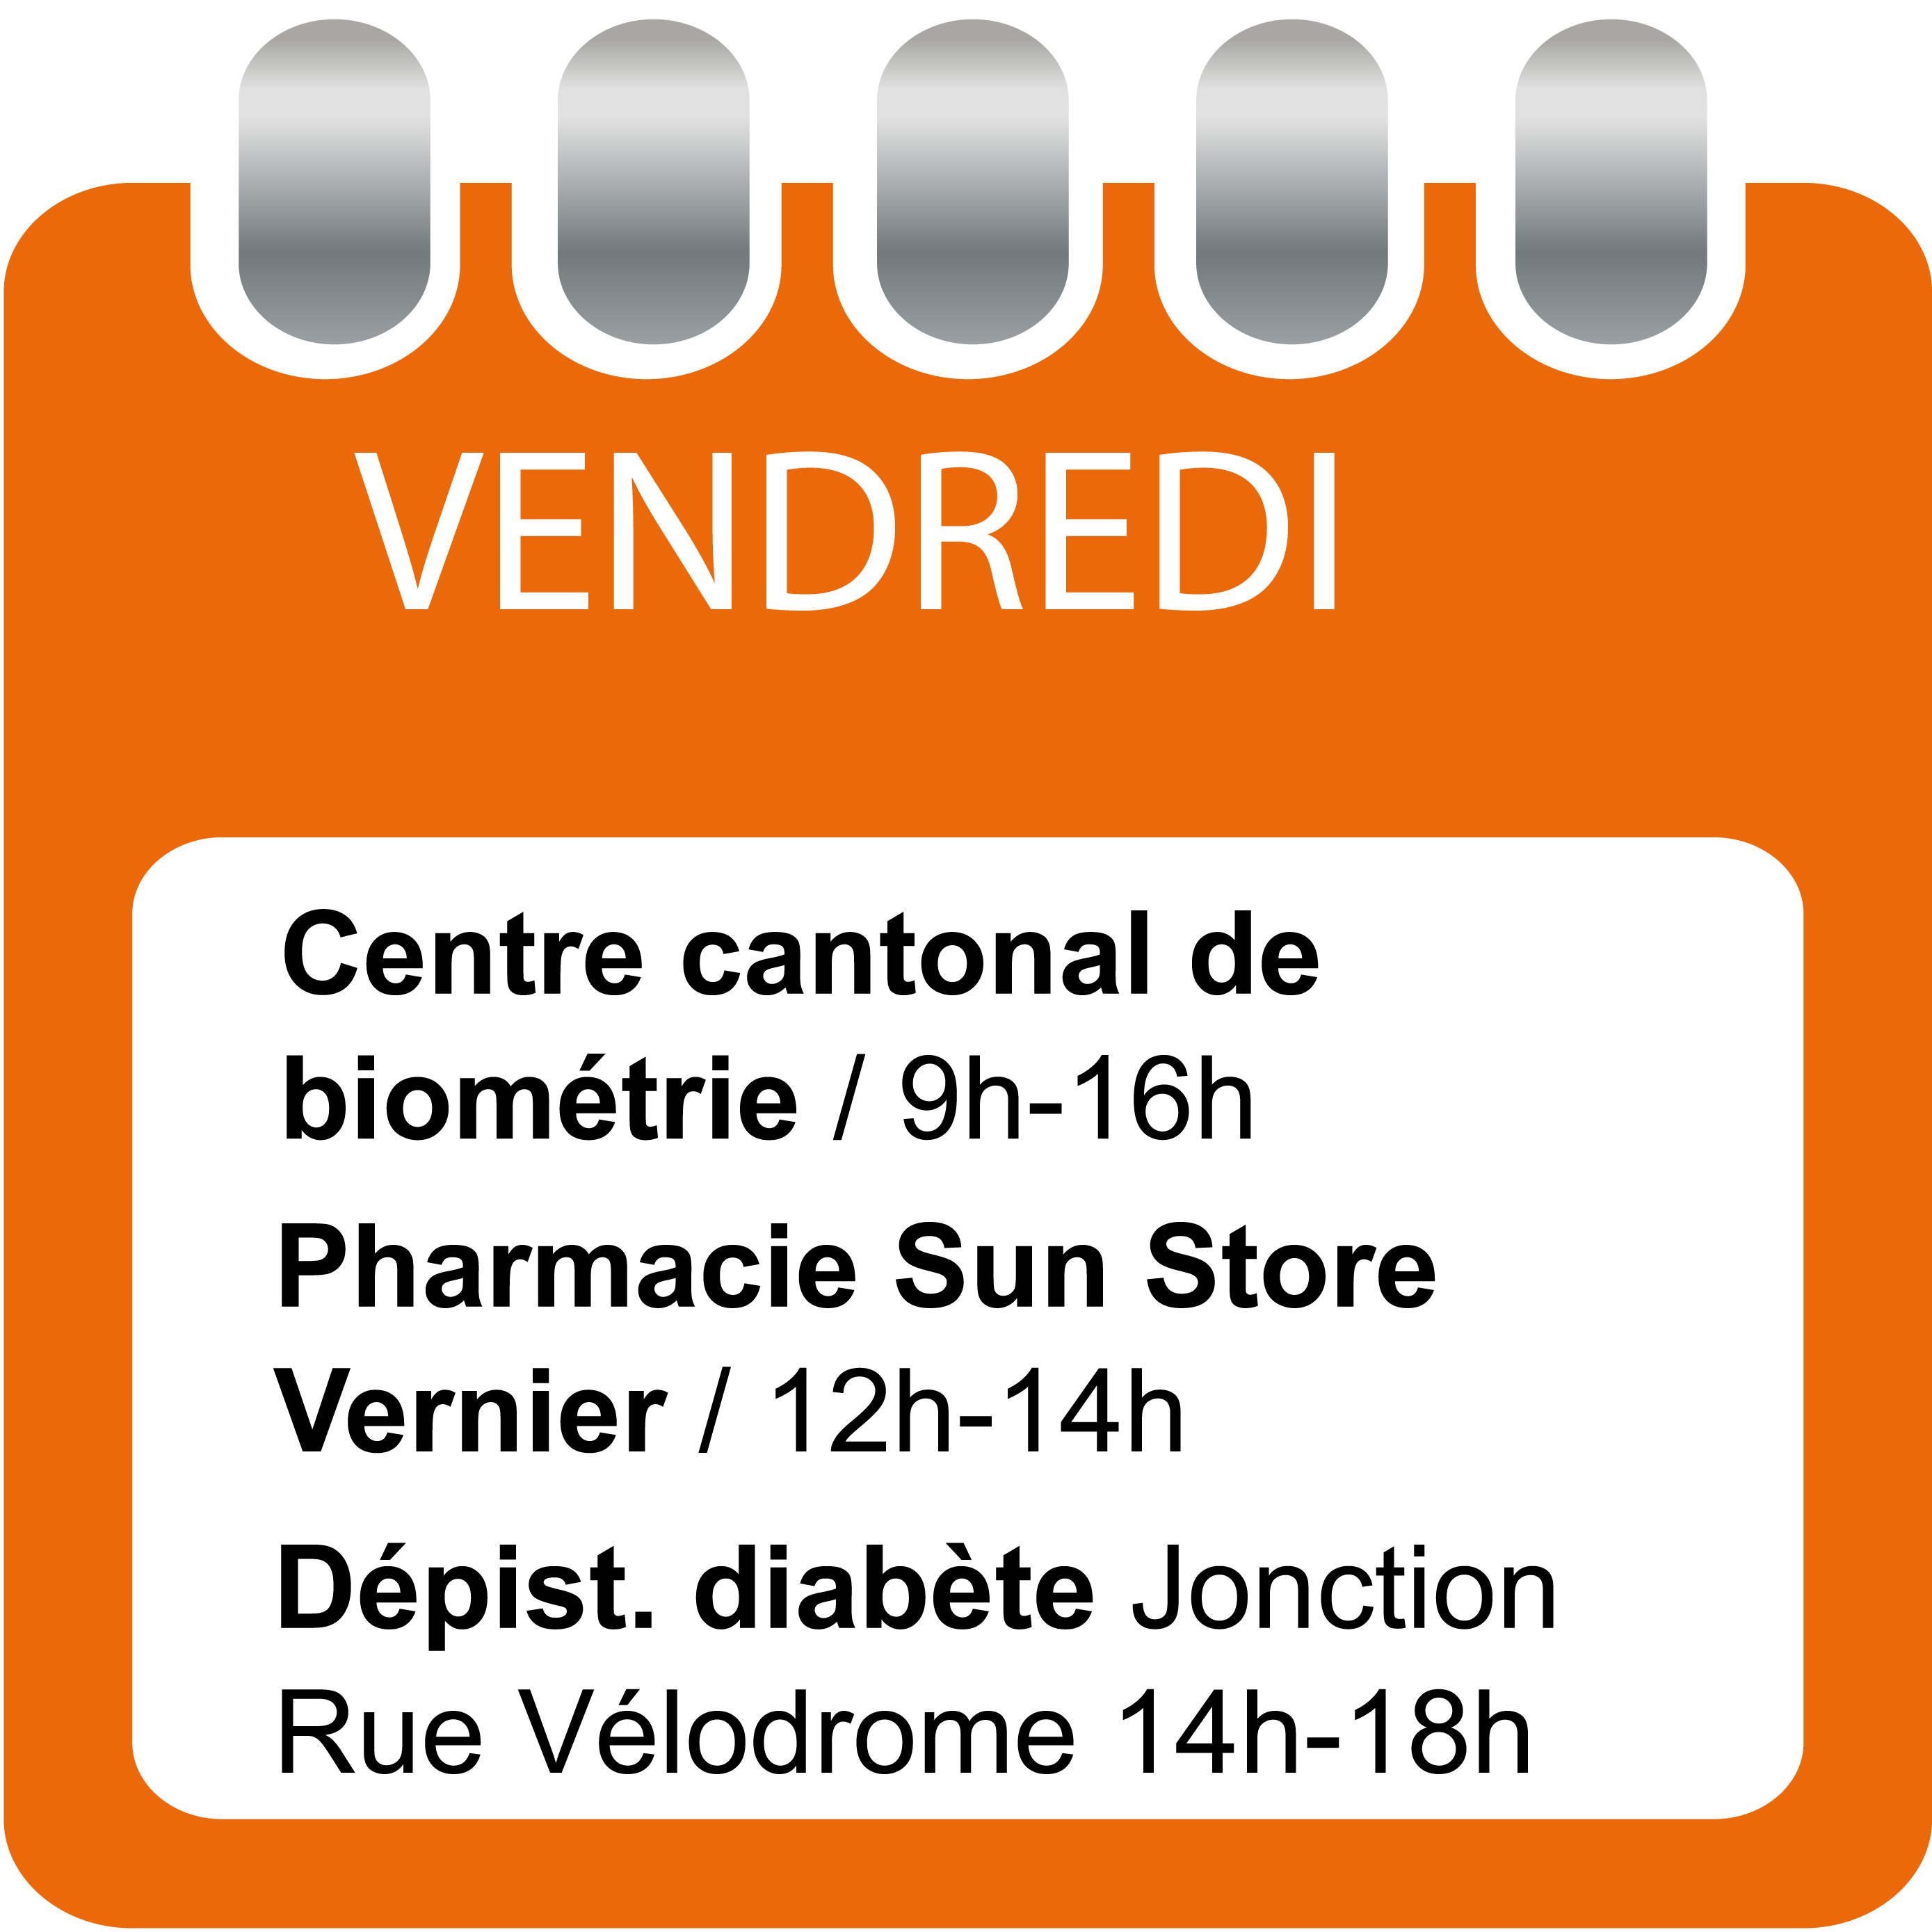 Vendredi - Centre cantonal de biométrie (9h-16h), Pharmacie Sun Store Vernier - ARCenter (12h-14h) et Dépistage diabète (14h-18h)